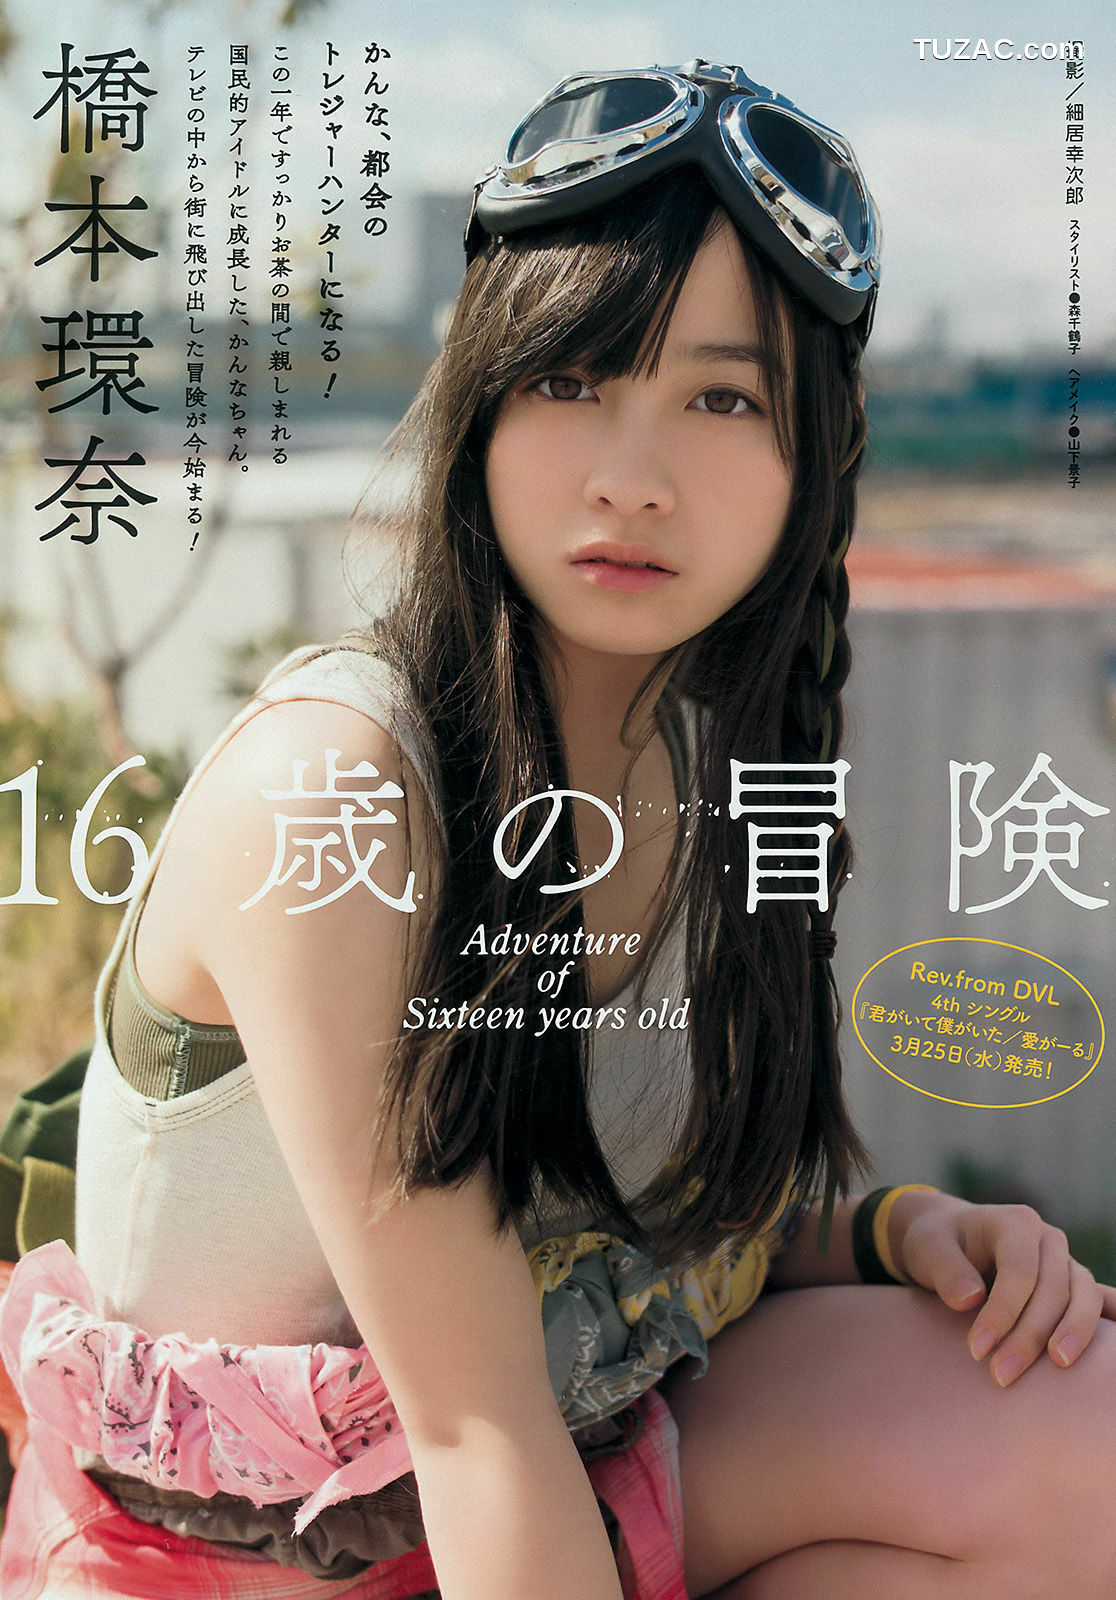 Young Magazine杂志写真_ 橋本環奈 上西星来 2015年No.17 写真杂志[11P]